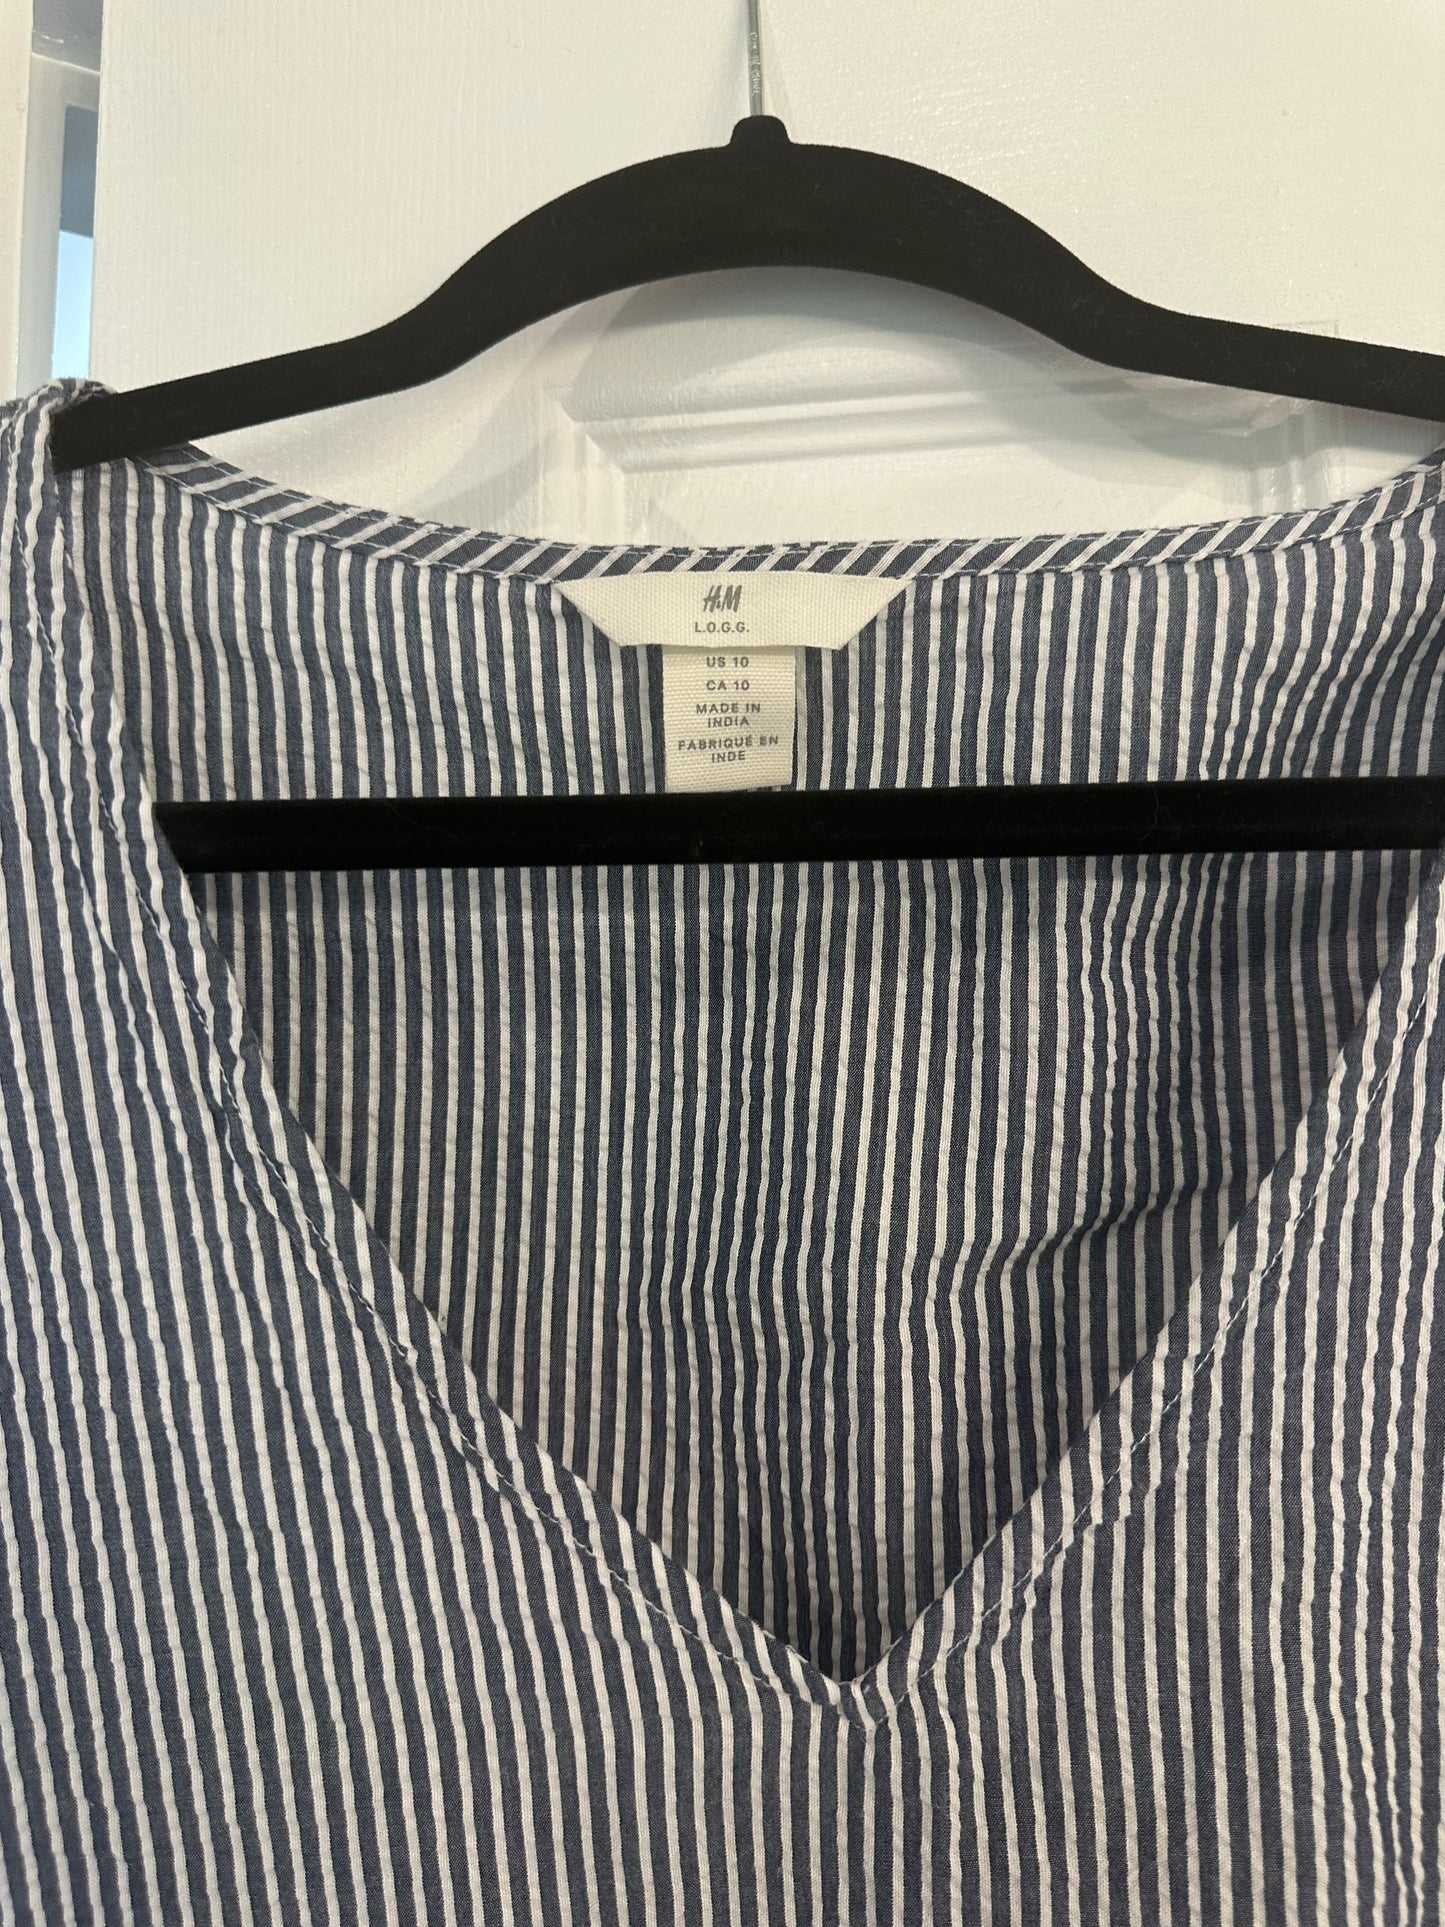 H&M Size 10 Blue & White striped shirt - Women's